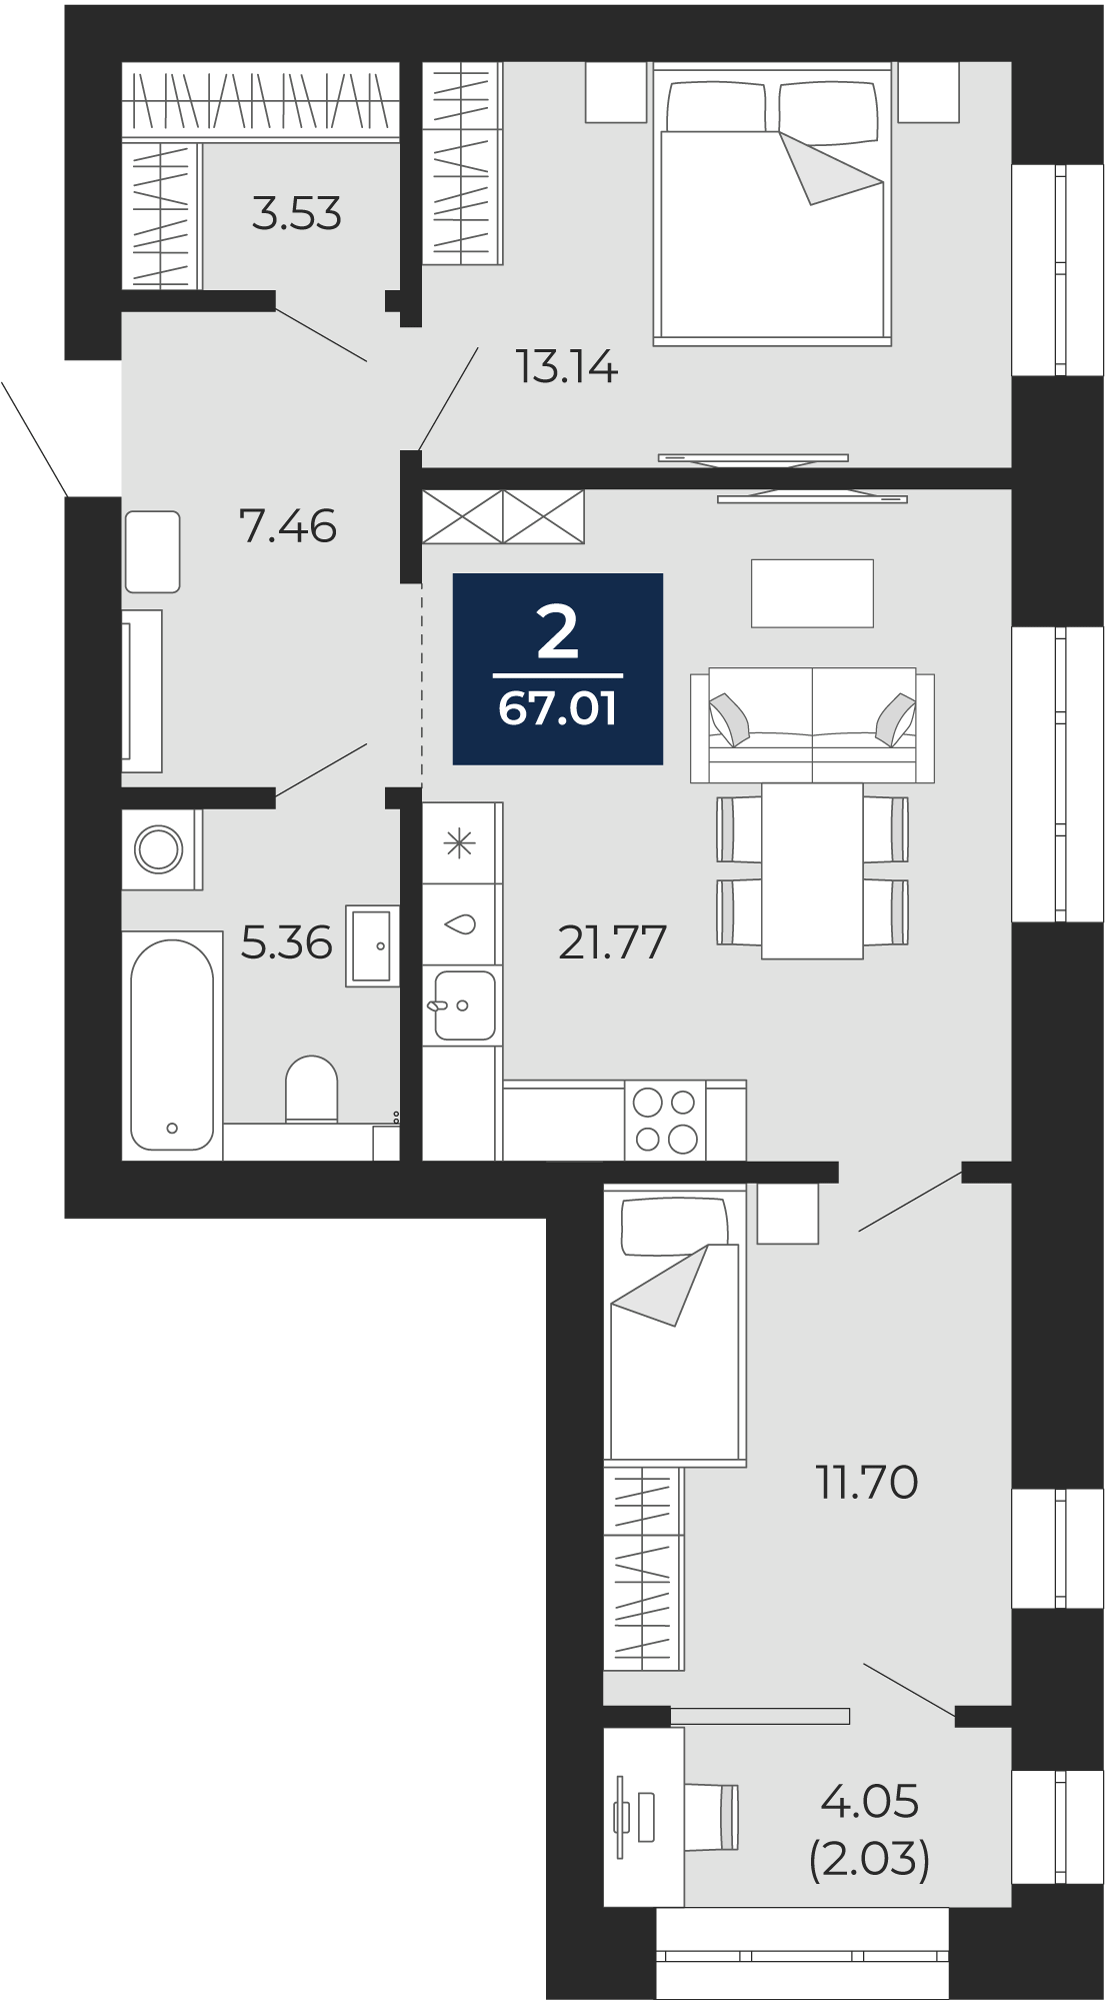 Квартира № 164, 2-комнатная, 67.01 кв. м, 8 этаж